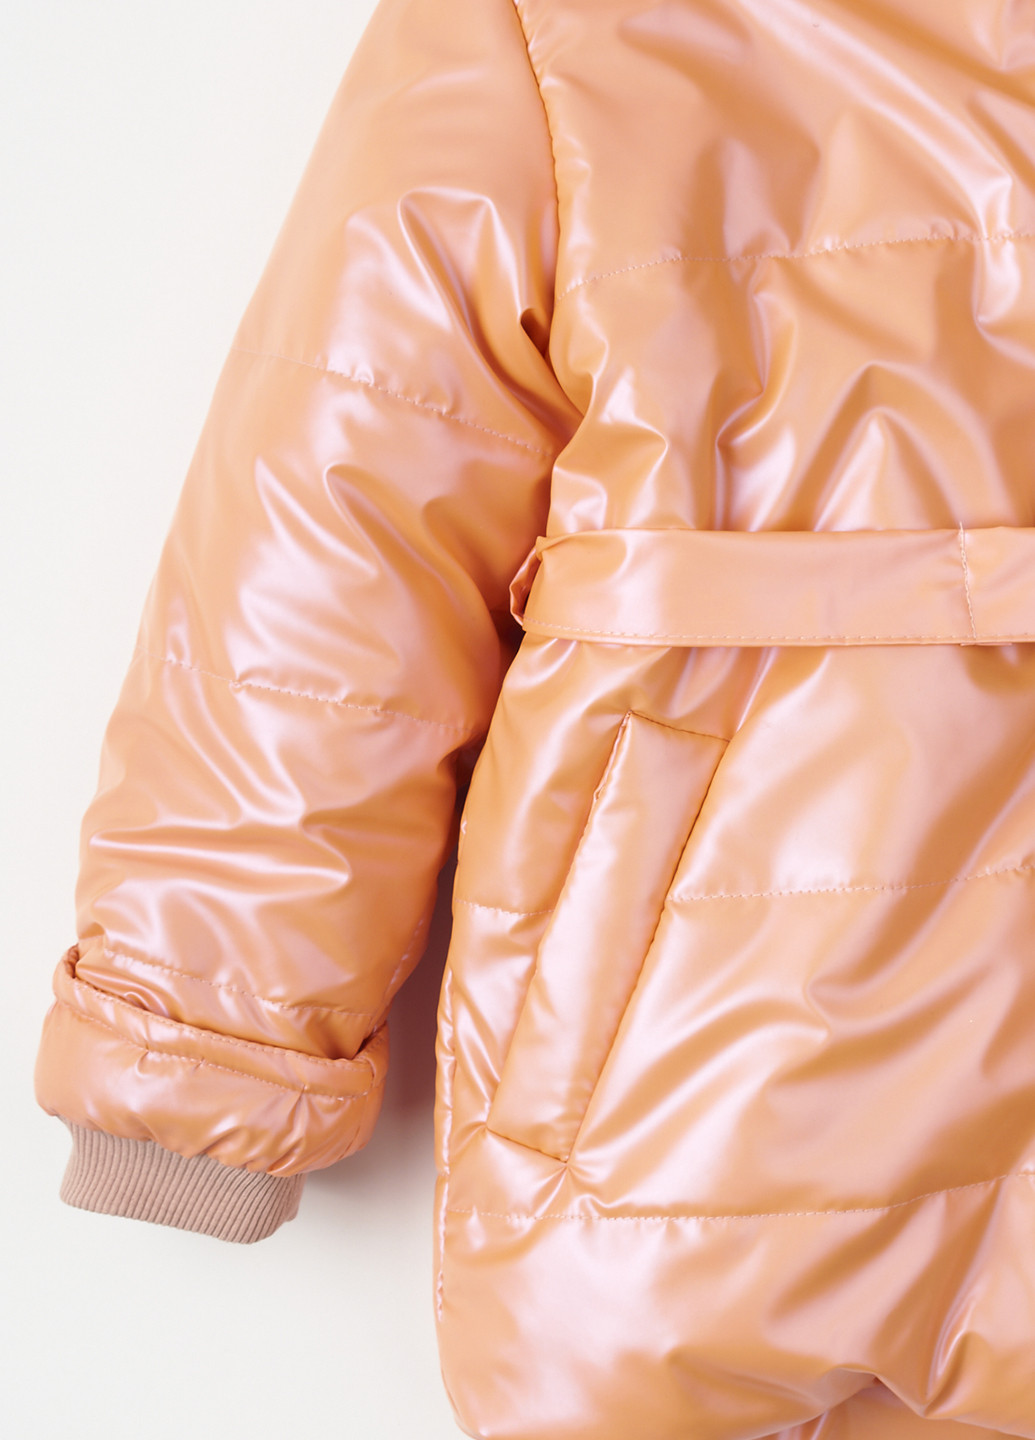 Светло-оранжевая зимняя куртка Одягайко